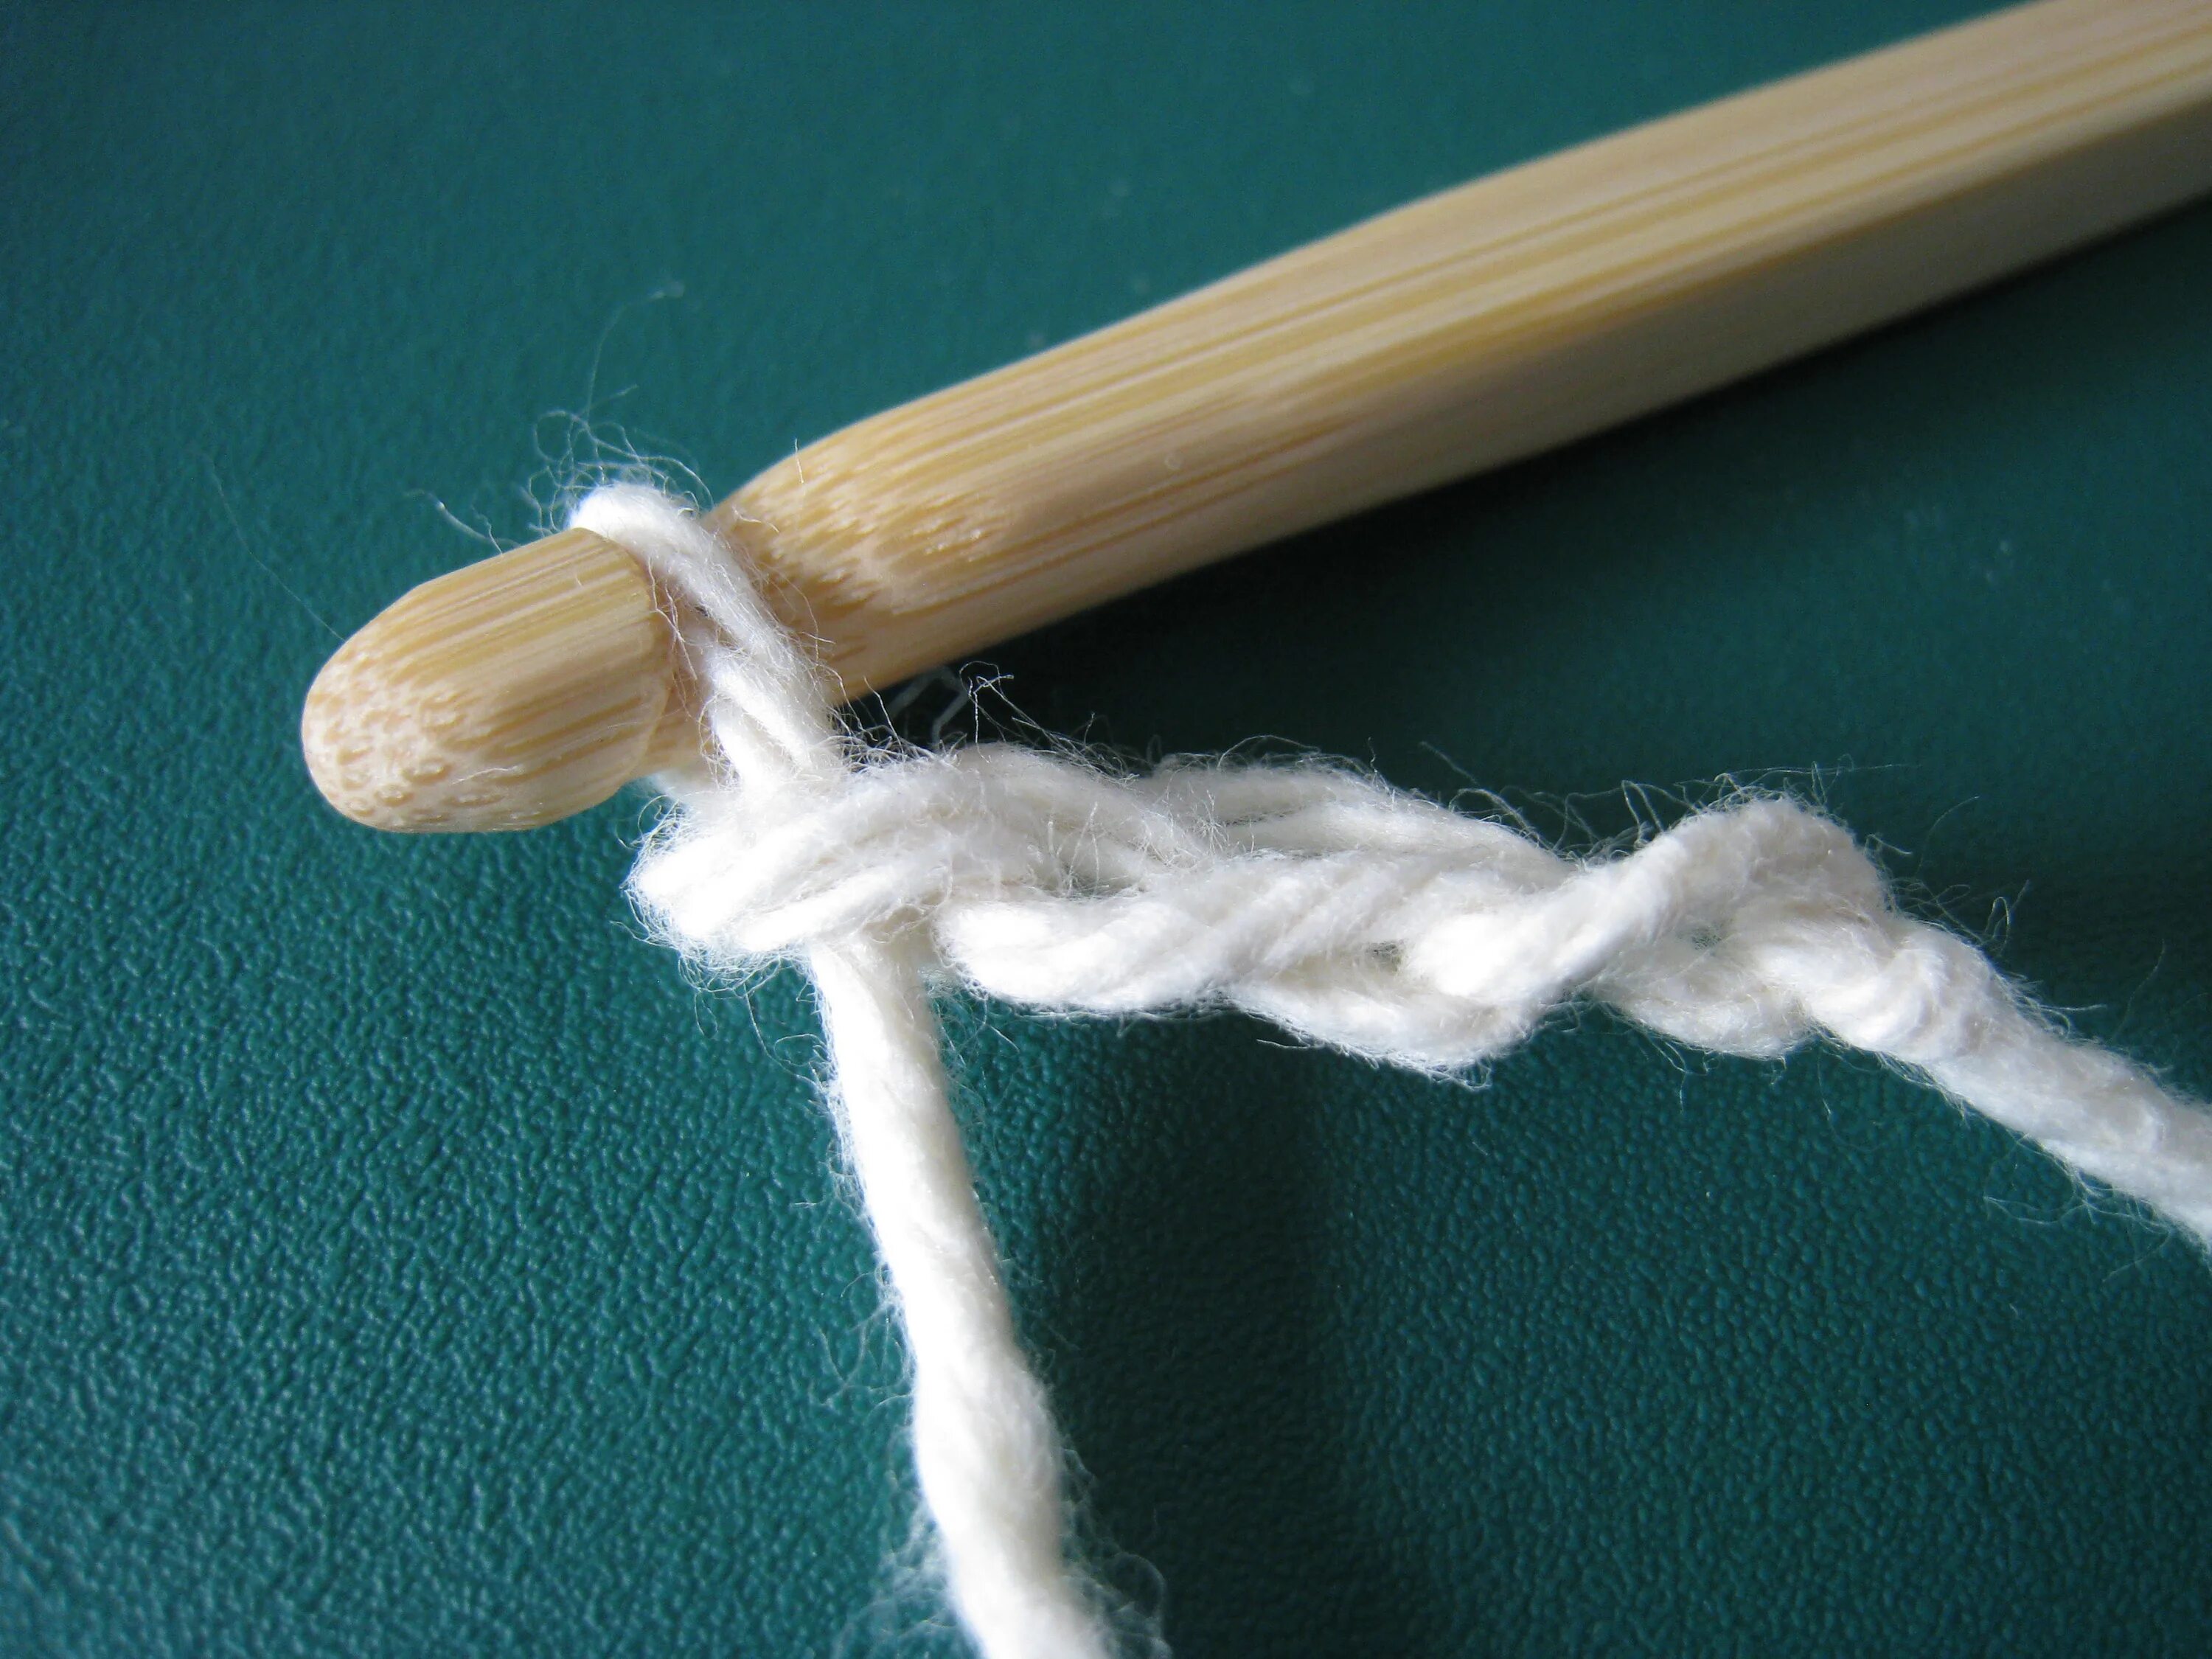 Как сделать крючок своими руками. Как сделать крючок для вязания своими руками. Из вязальных ниток косички белые. Как сделать самим крючок для вязания.